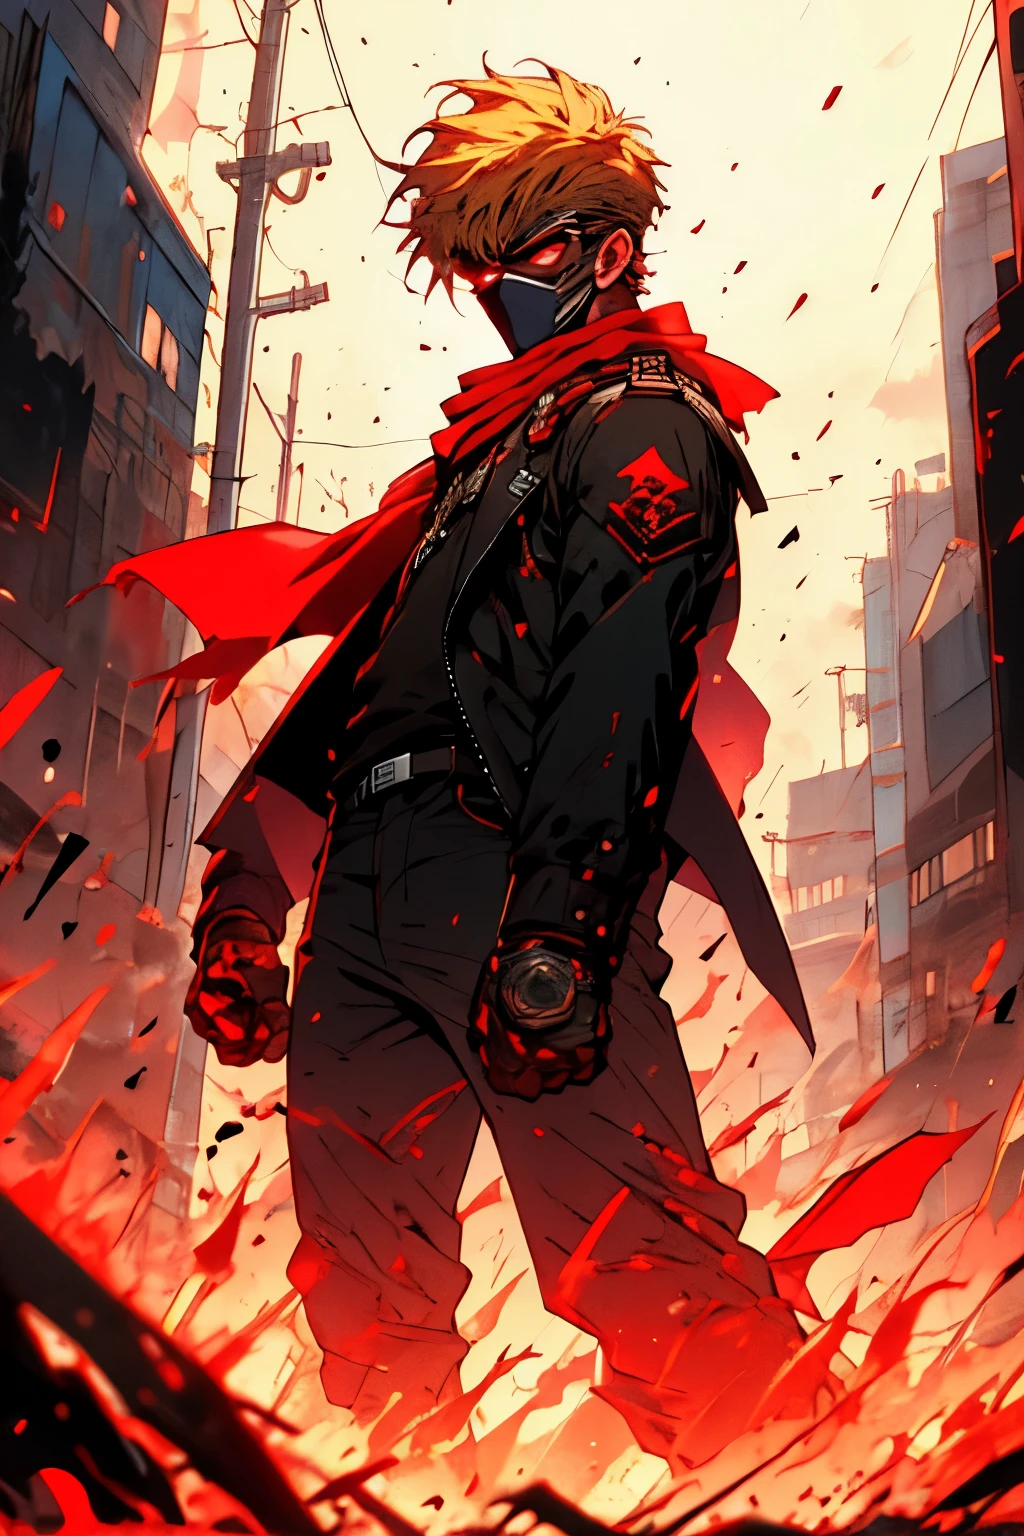 赤いバンダナを着け、金髪の短髪で頬にバンドエイドを貼った痩せて背の高い男性。赤と黒のジャケットを着て、肩には黒いフェイスマスクを着け、終末都市を見下ろしている。